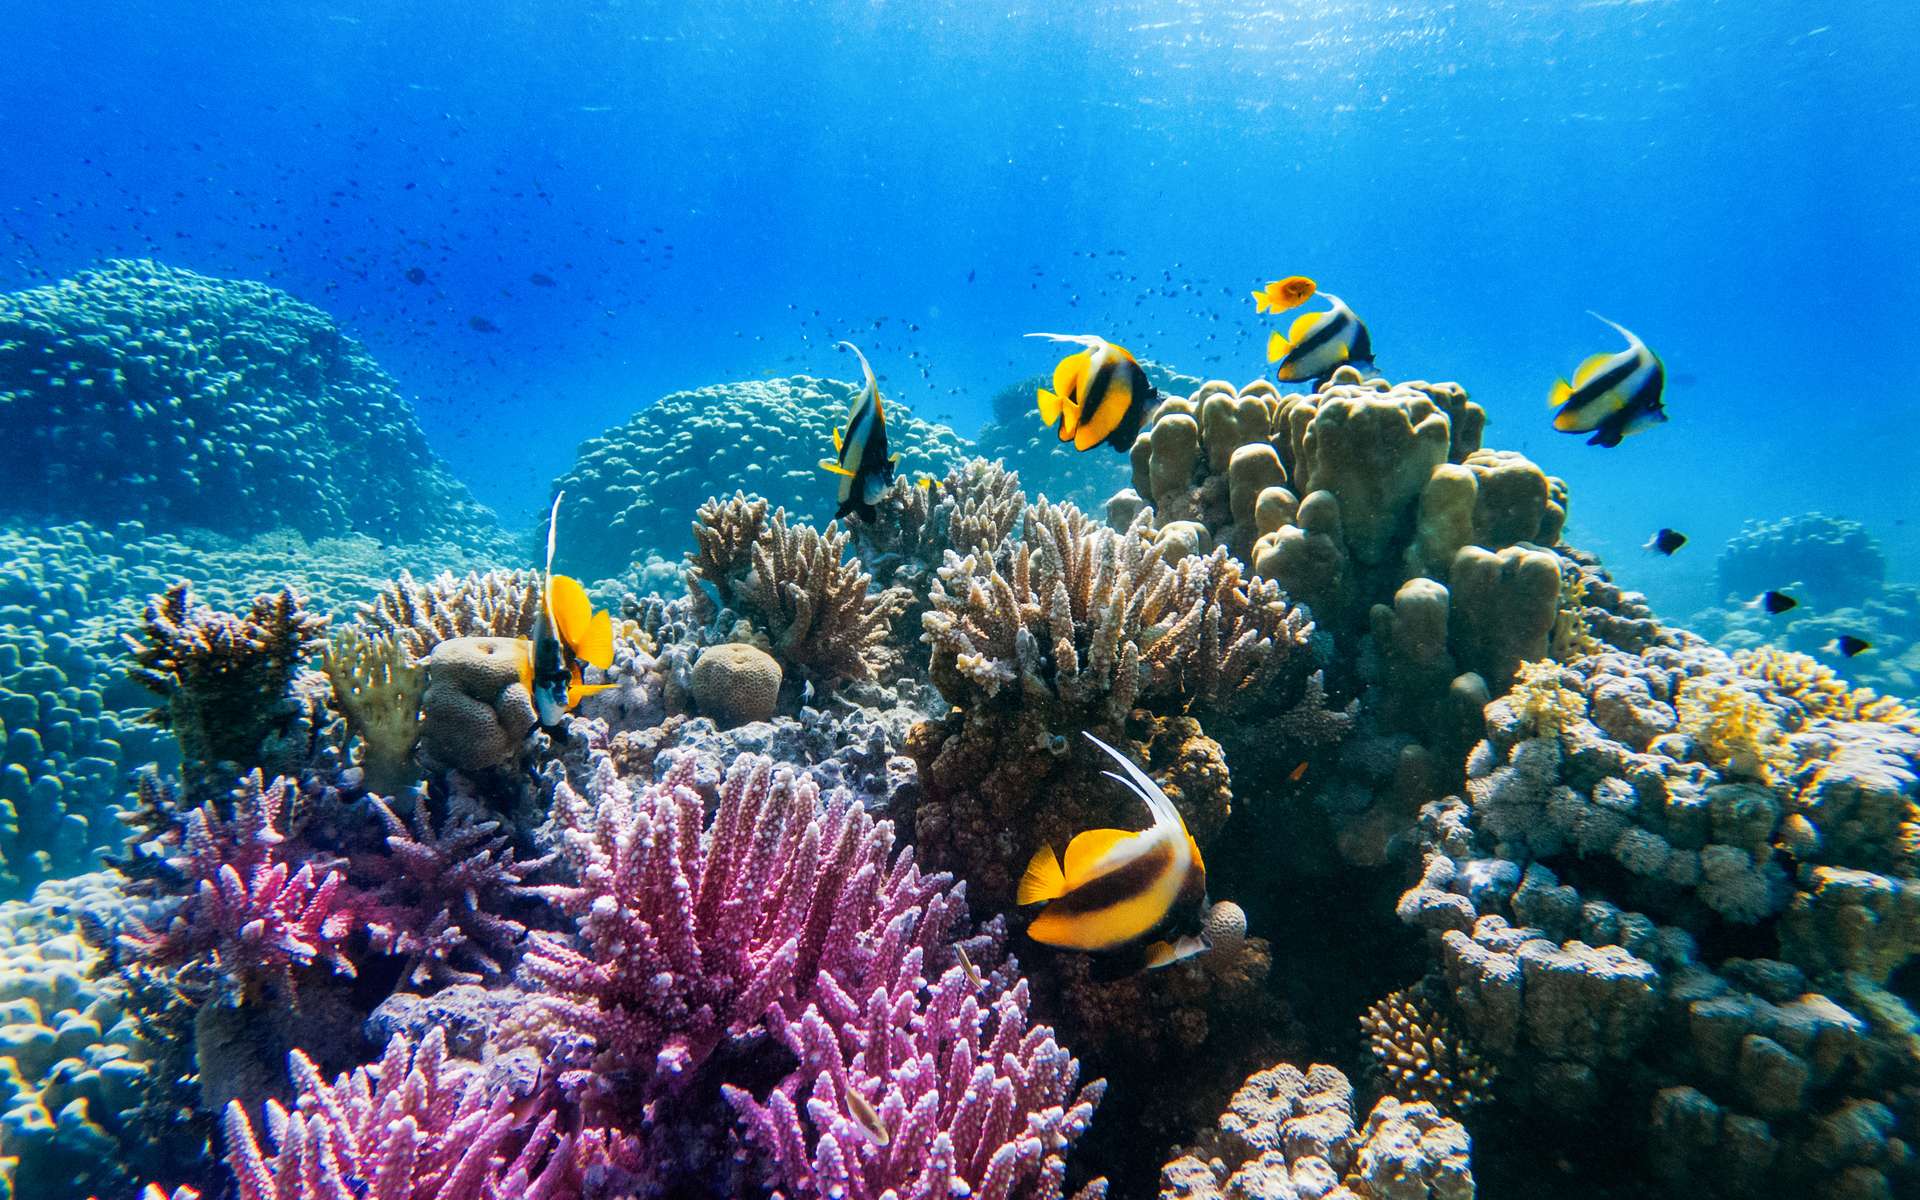 Les poissons des récifs coralliens sont souvent parés de nombreuses couleurs, dans l'imaginaire collectif. © ver0nicka, Adobe Stock